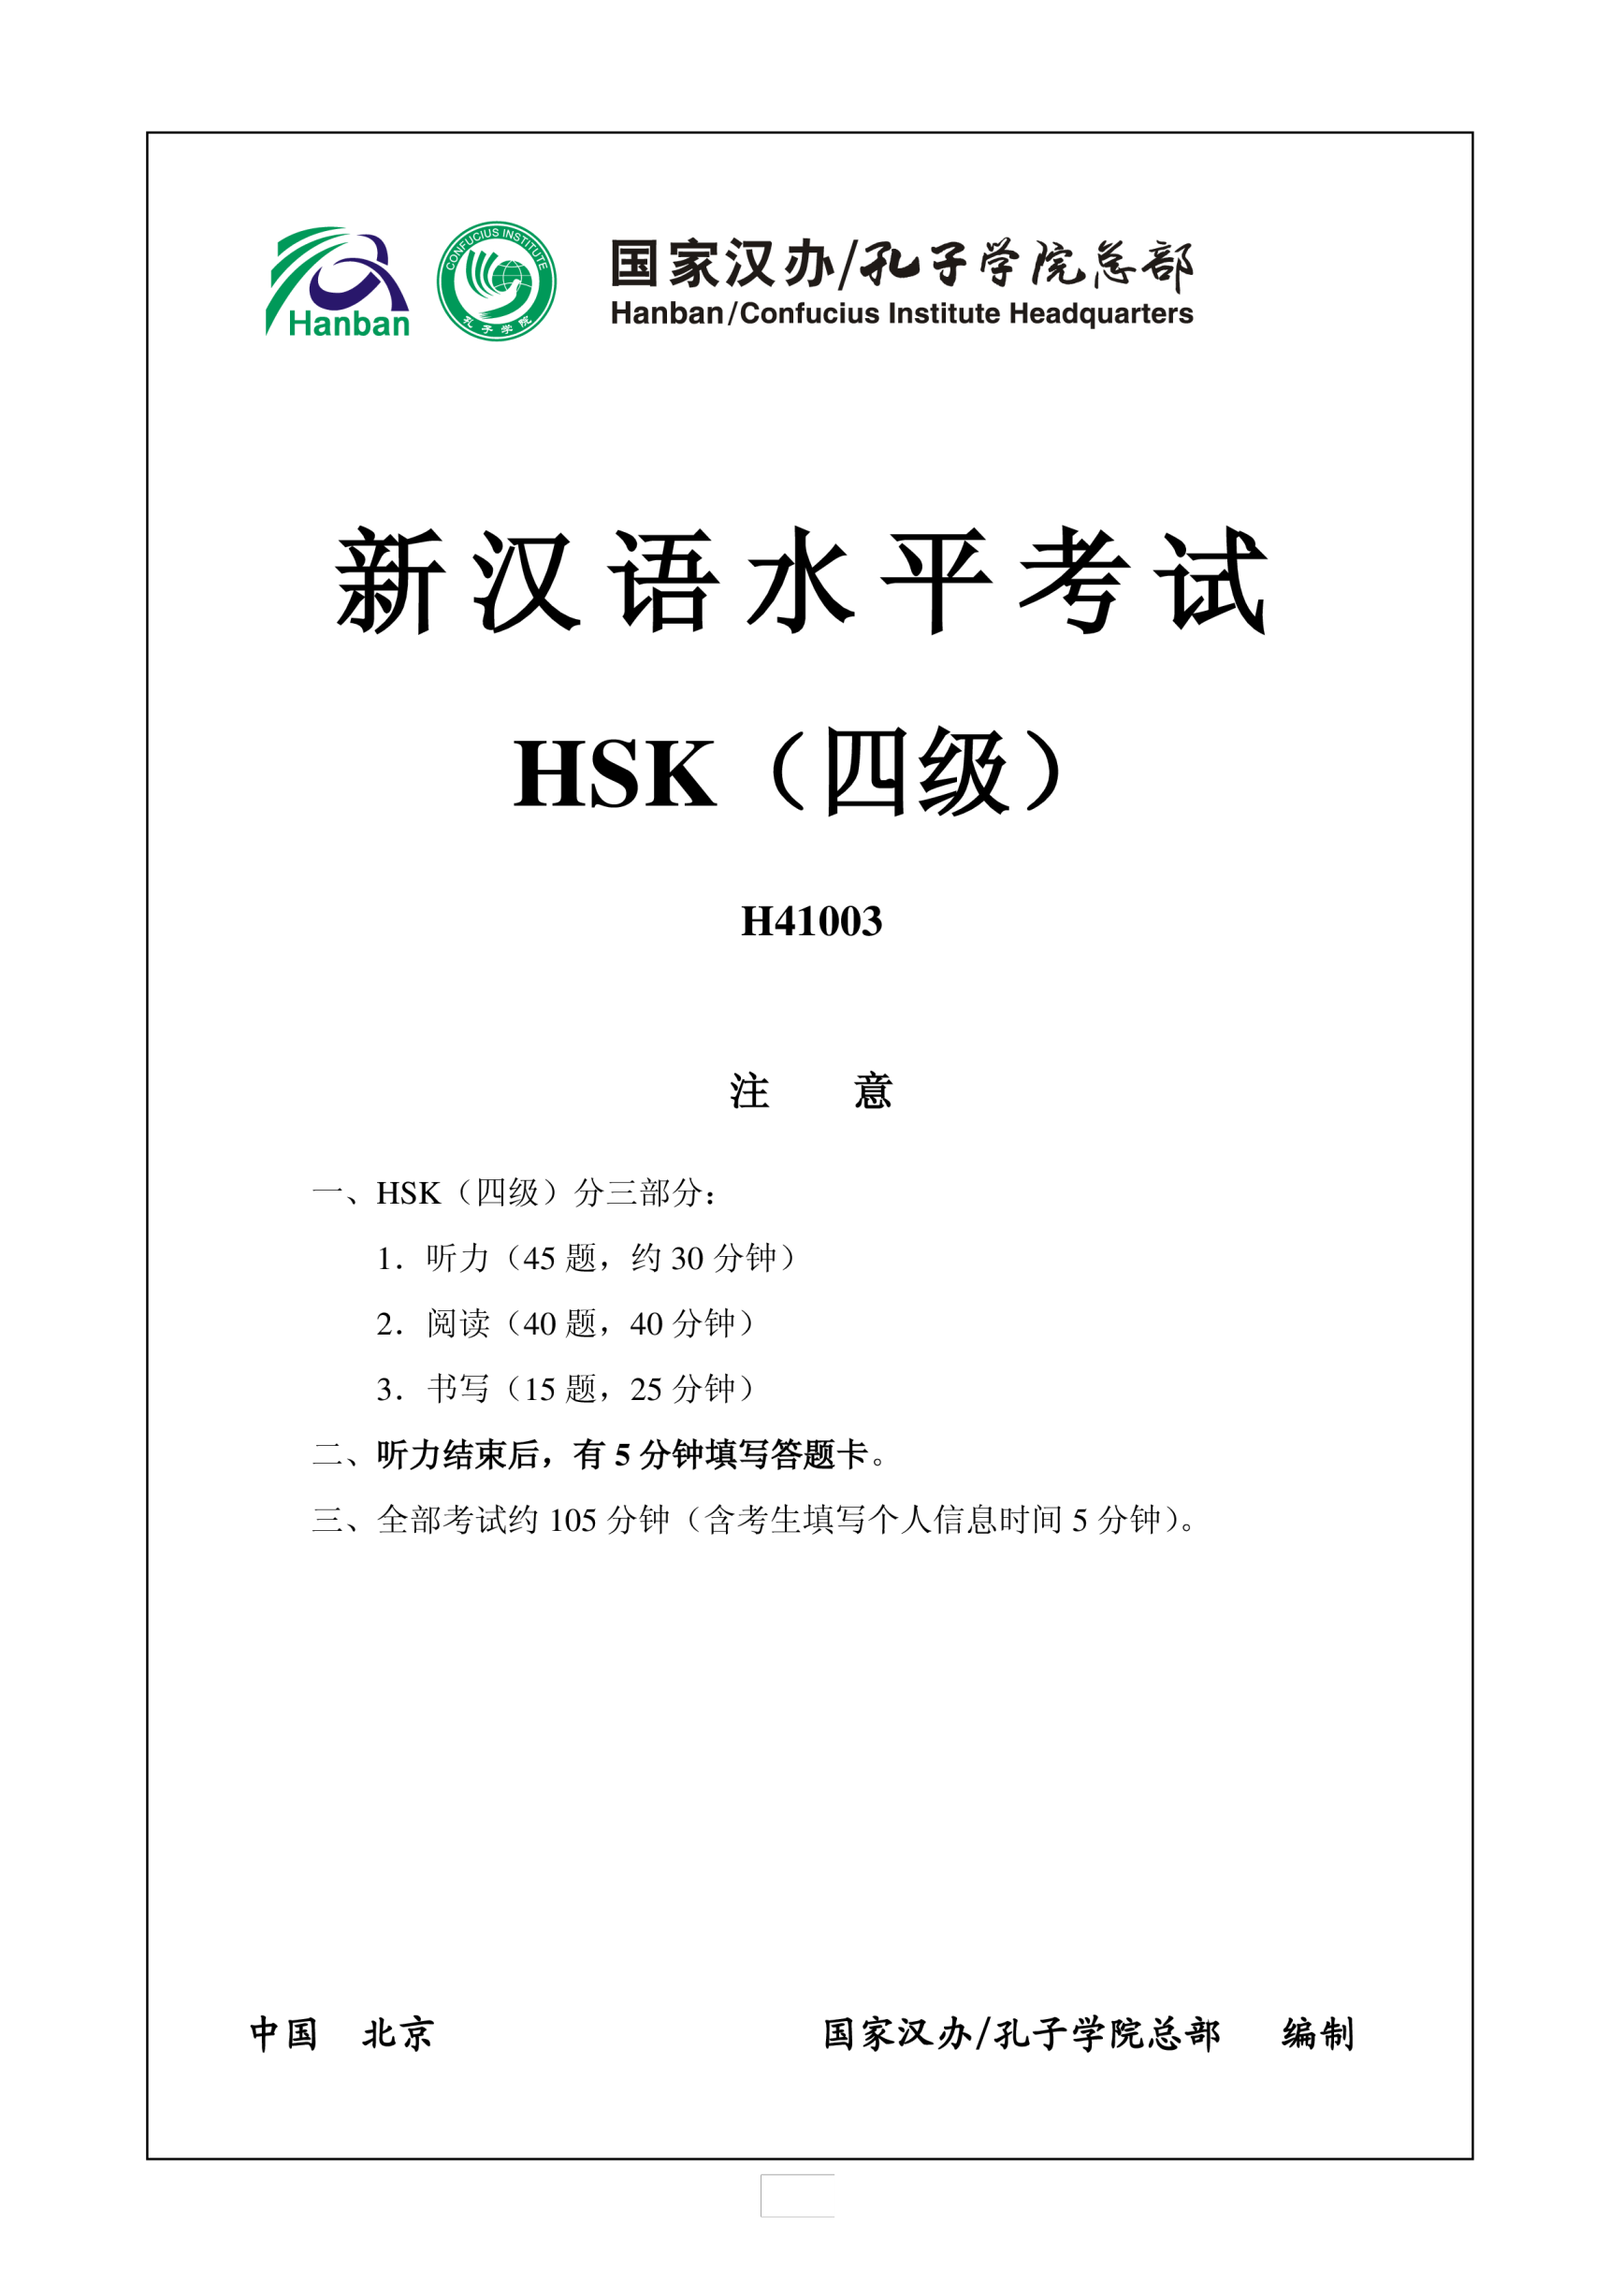 Vorschaubild der VorlageHSK4 Chinese Exam including Answers # HSK H41003